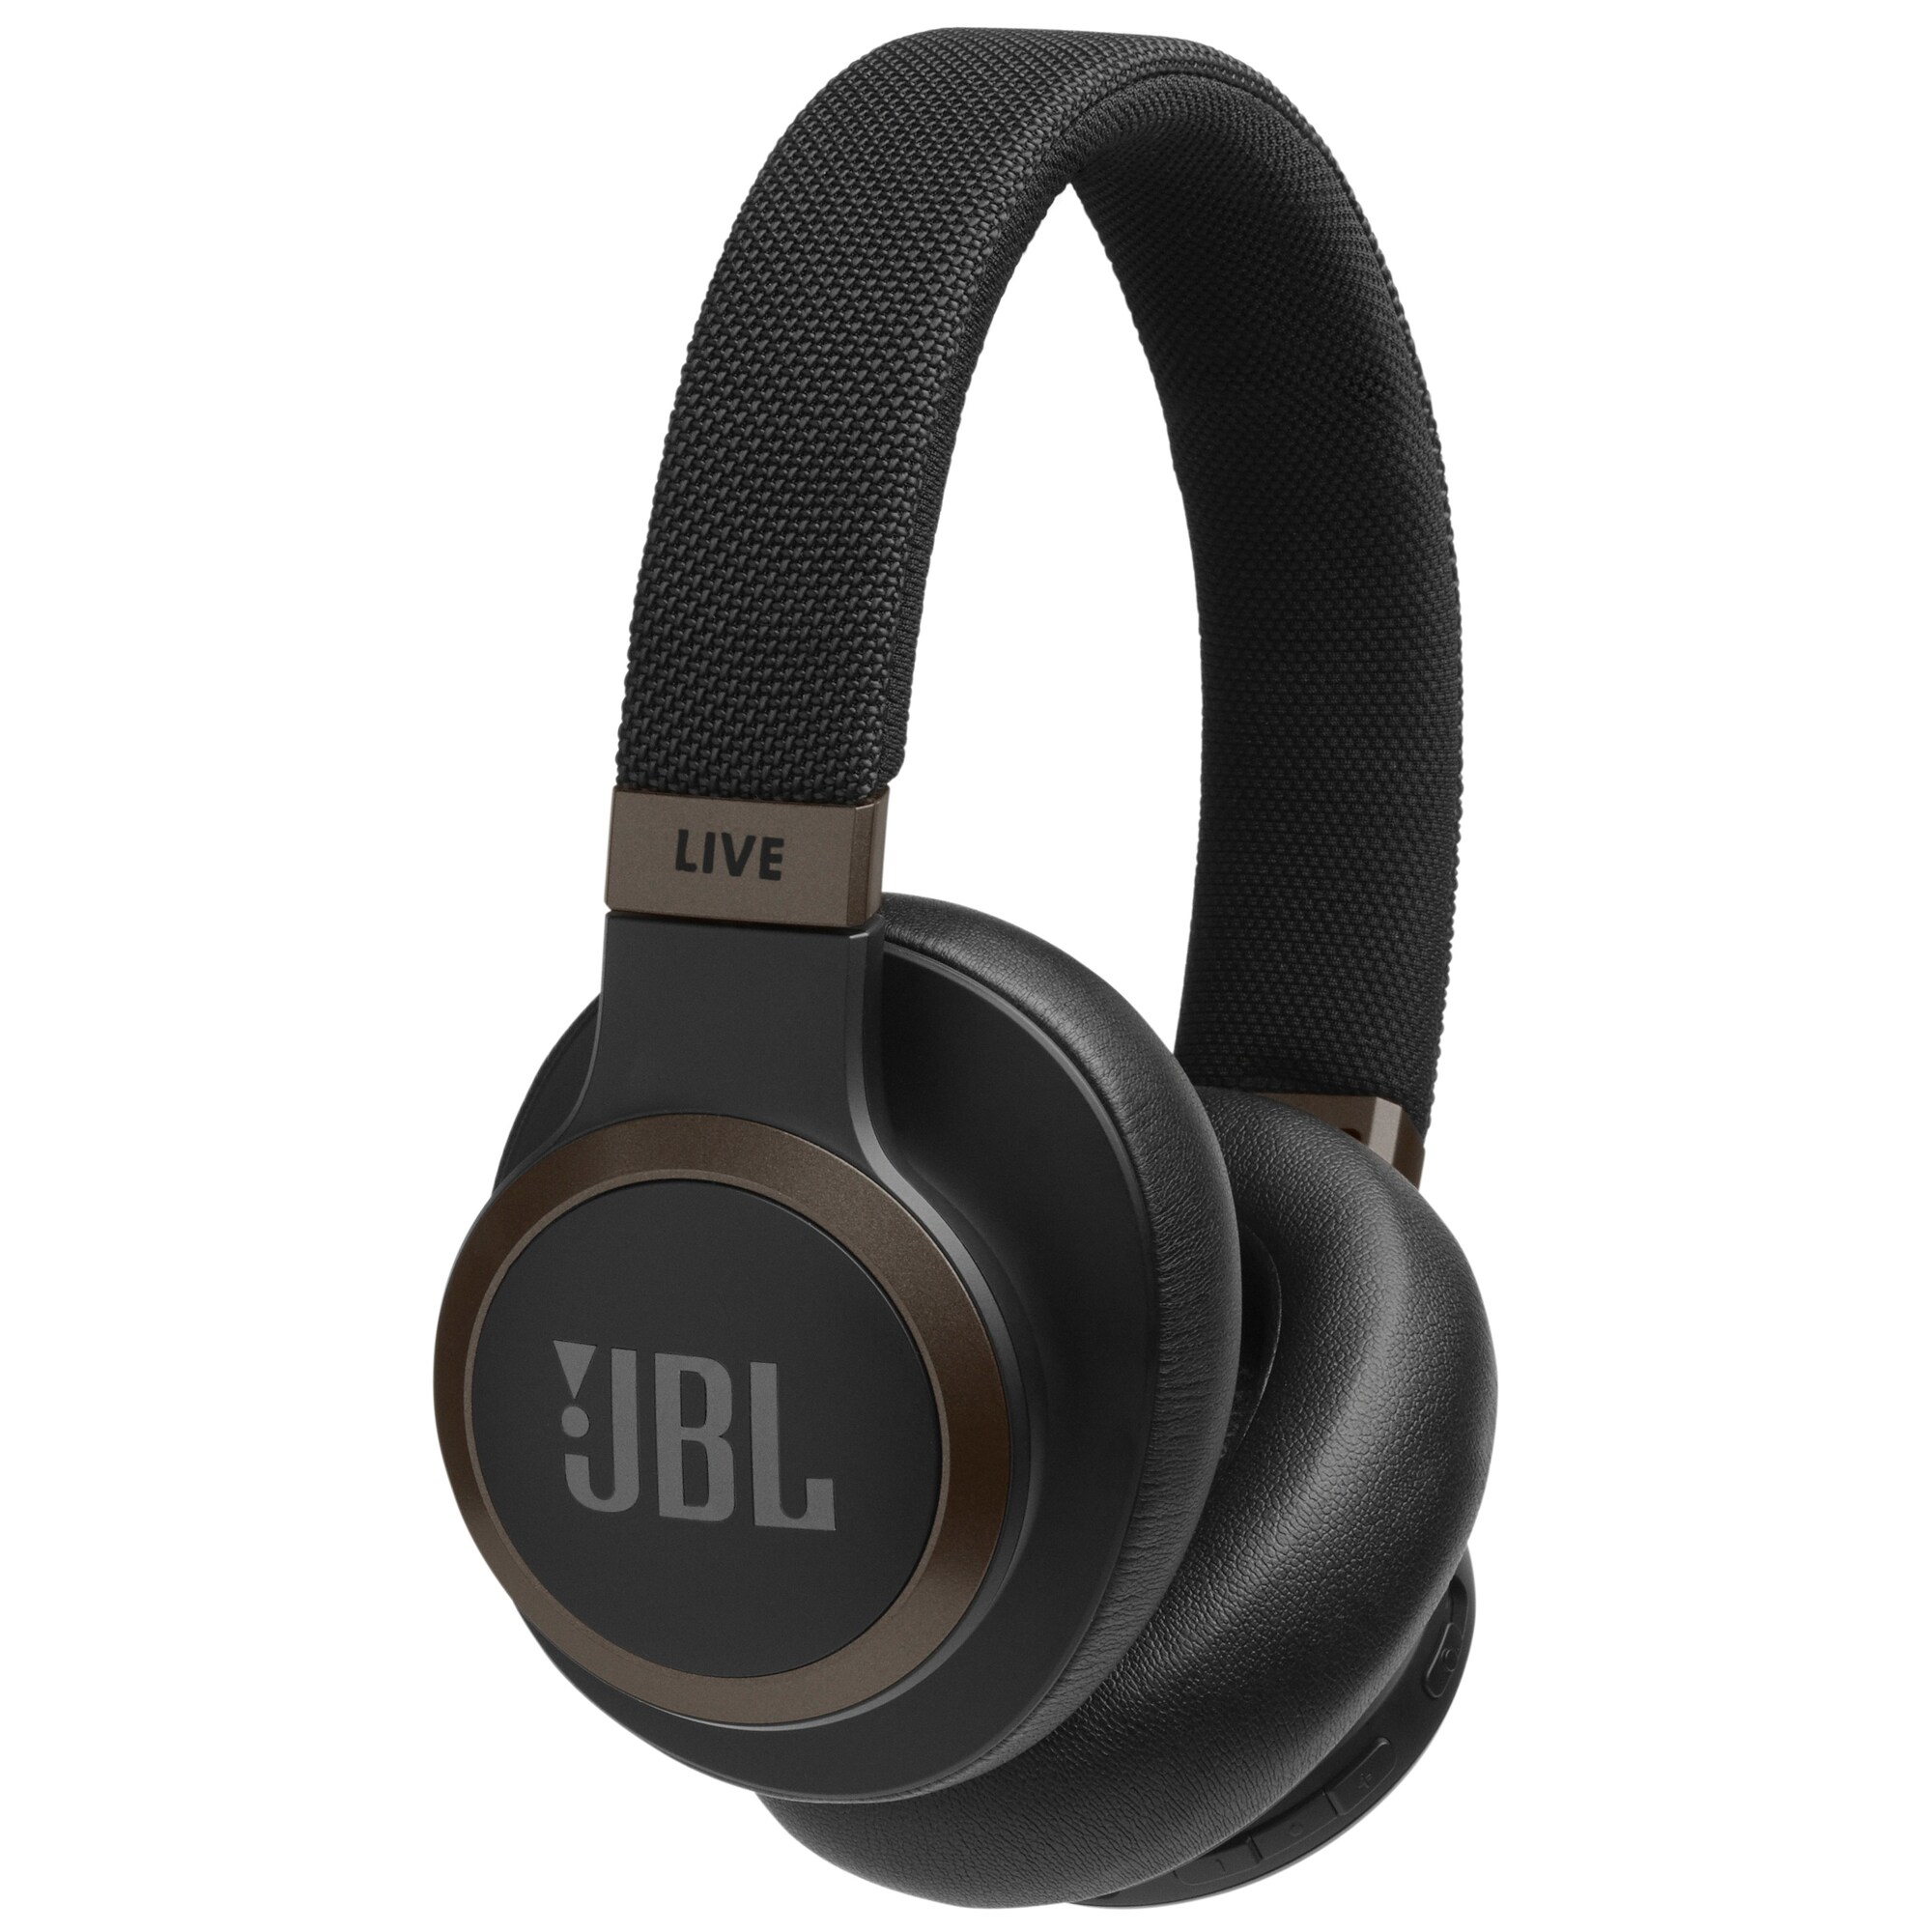 JBL LIVE 650BT trådlösa around-ear hörlurar (svart) - Hörlurar ...